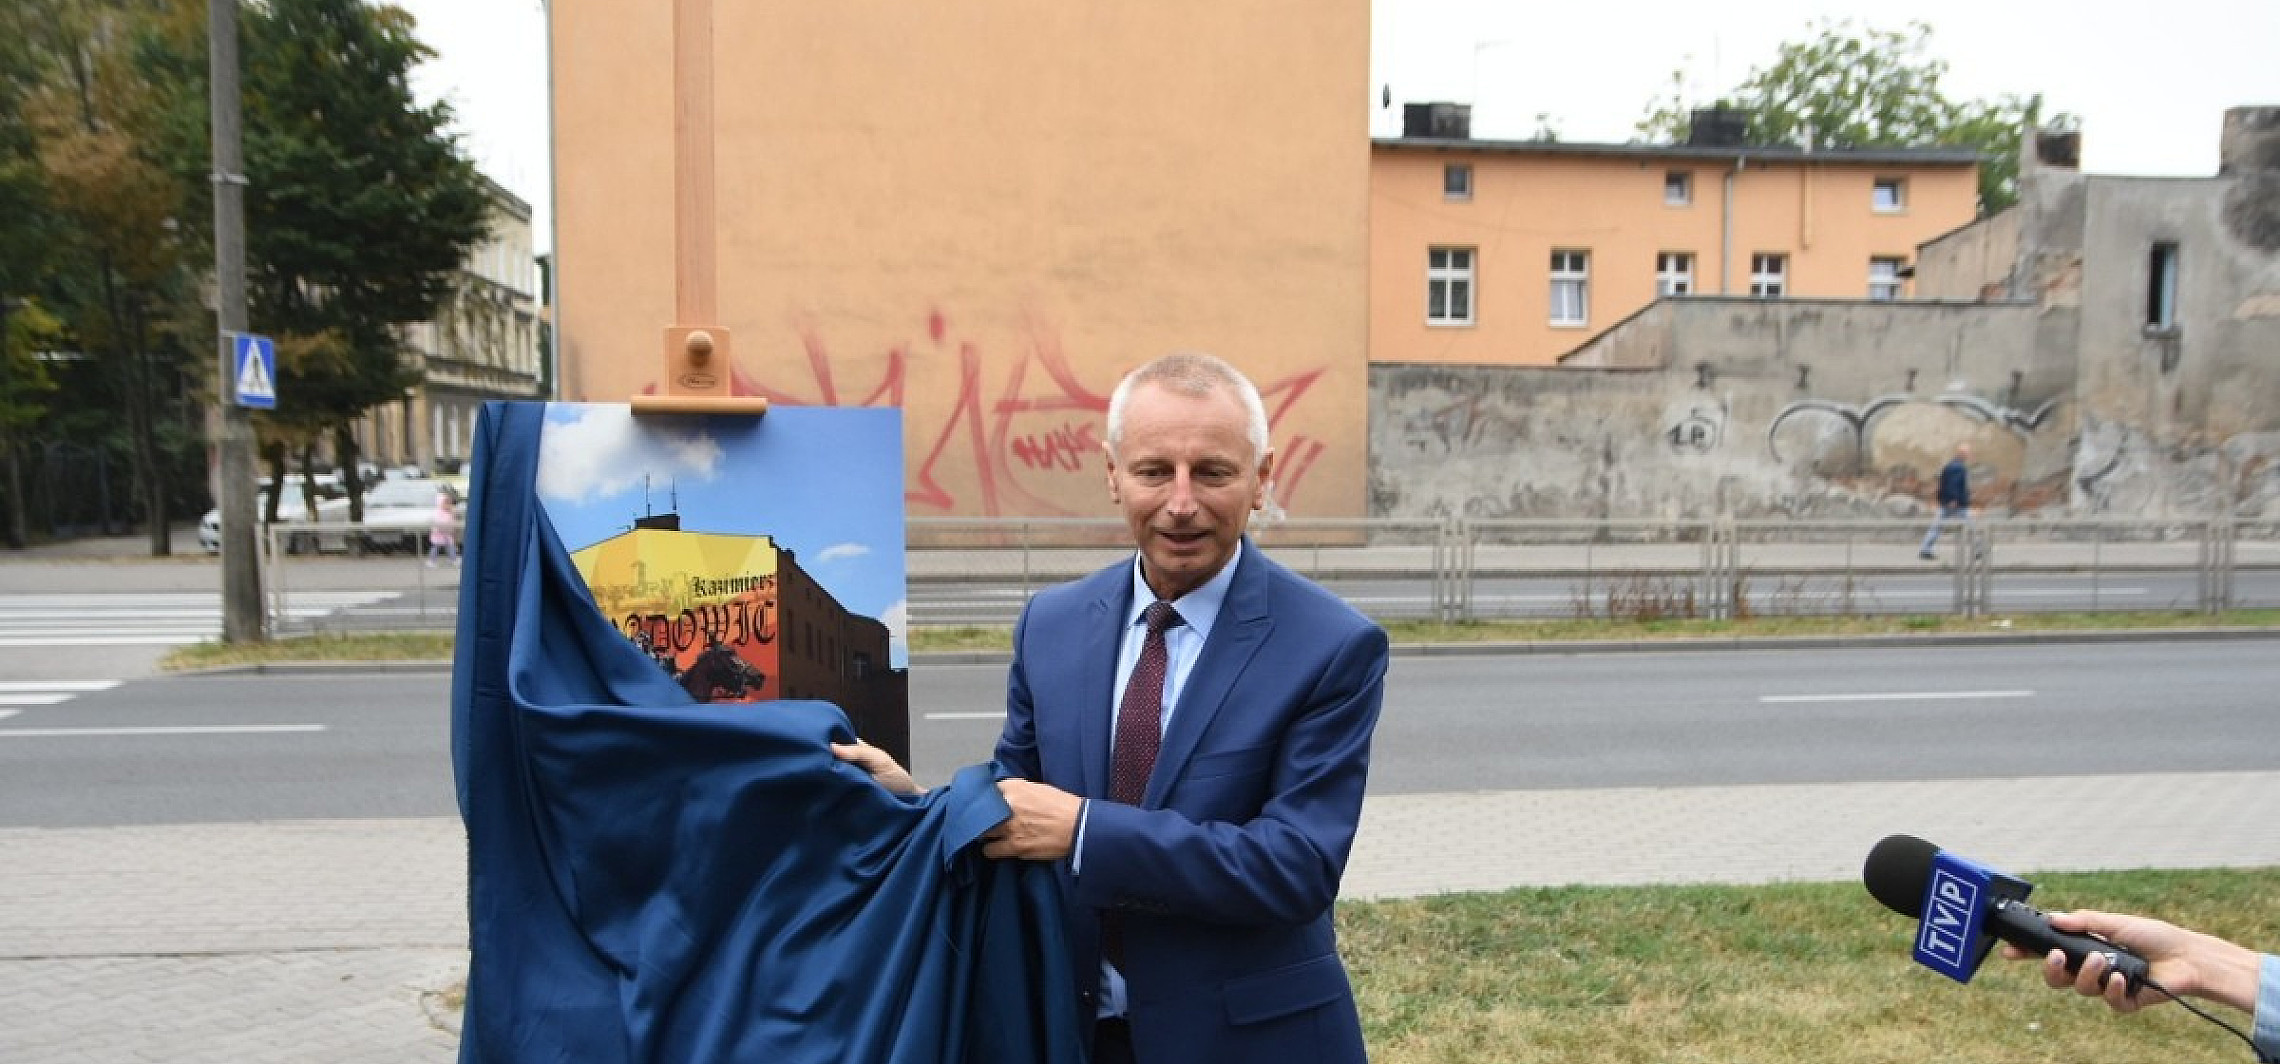 Inowrocław - Nowy mural powstanie przy ul. Staszica